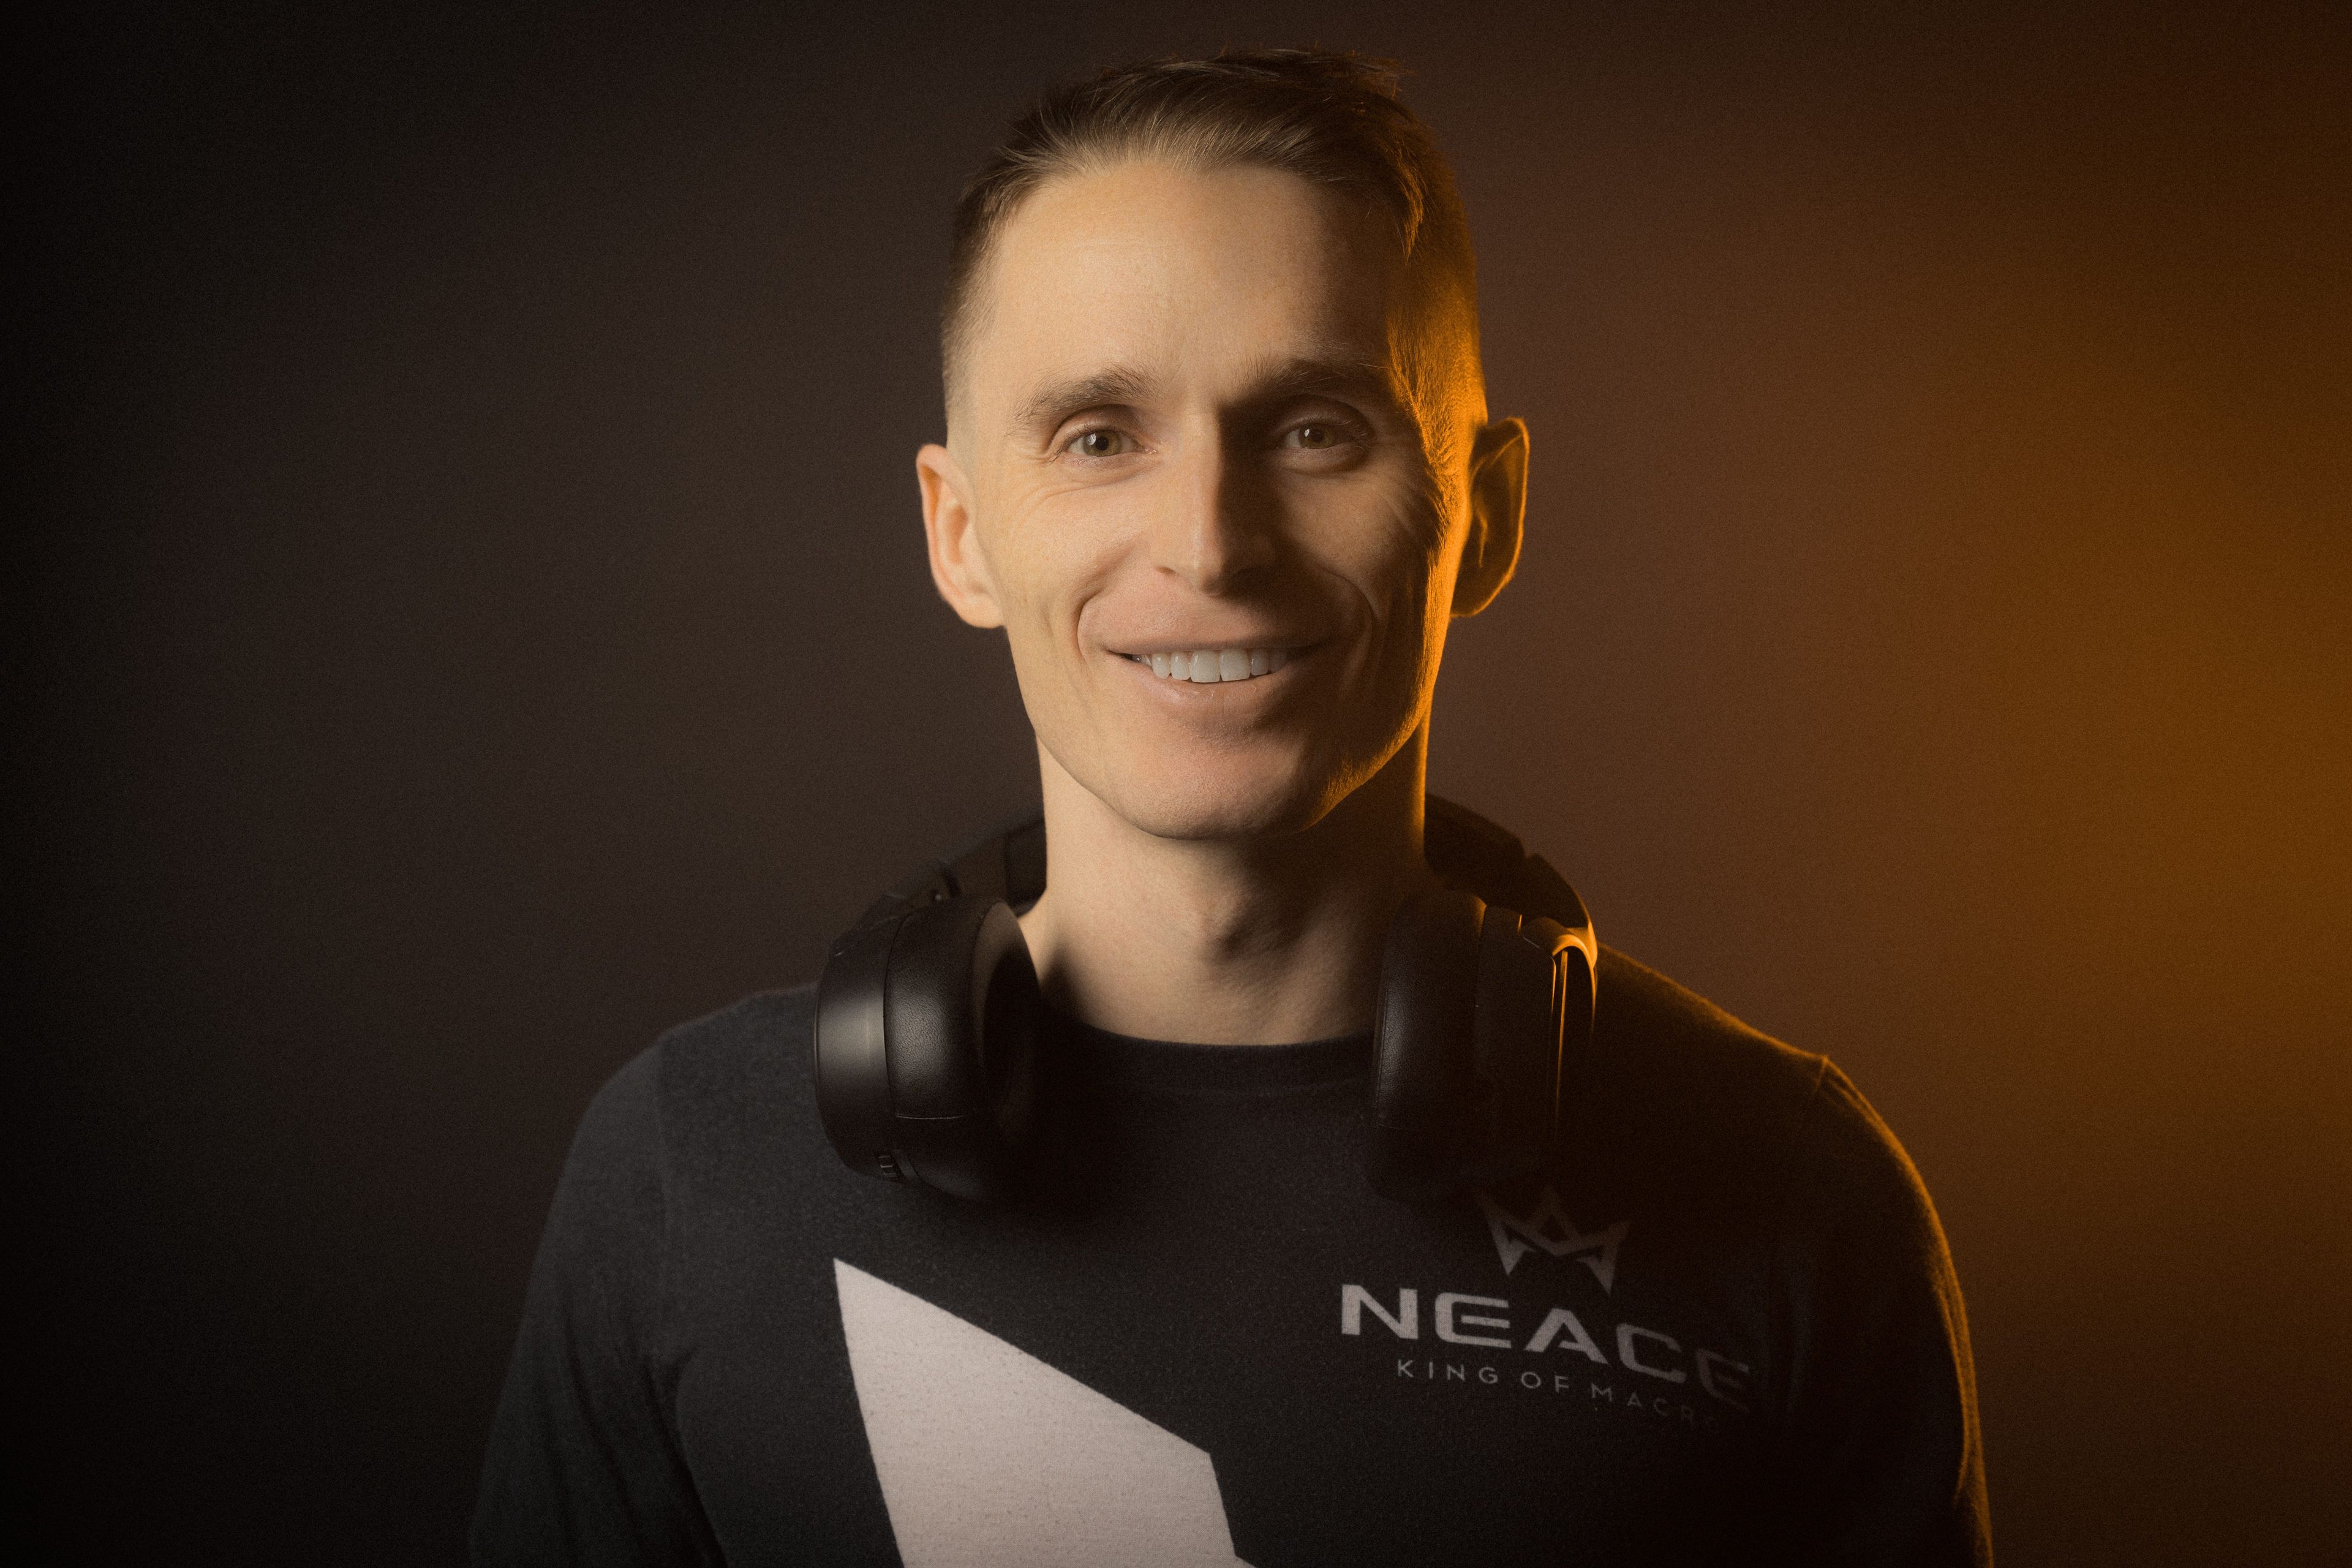 El entrenador de videojuegos profesional, Mark Neace